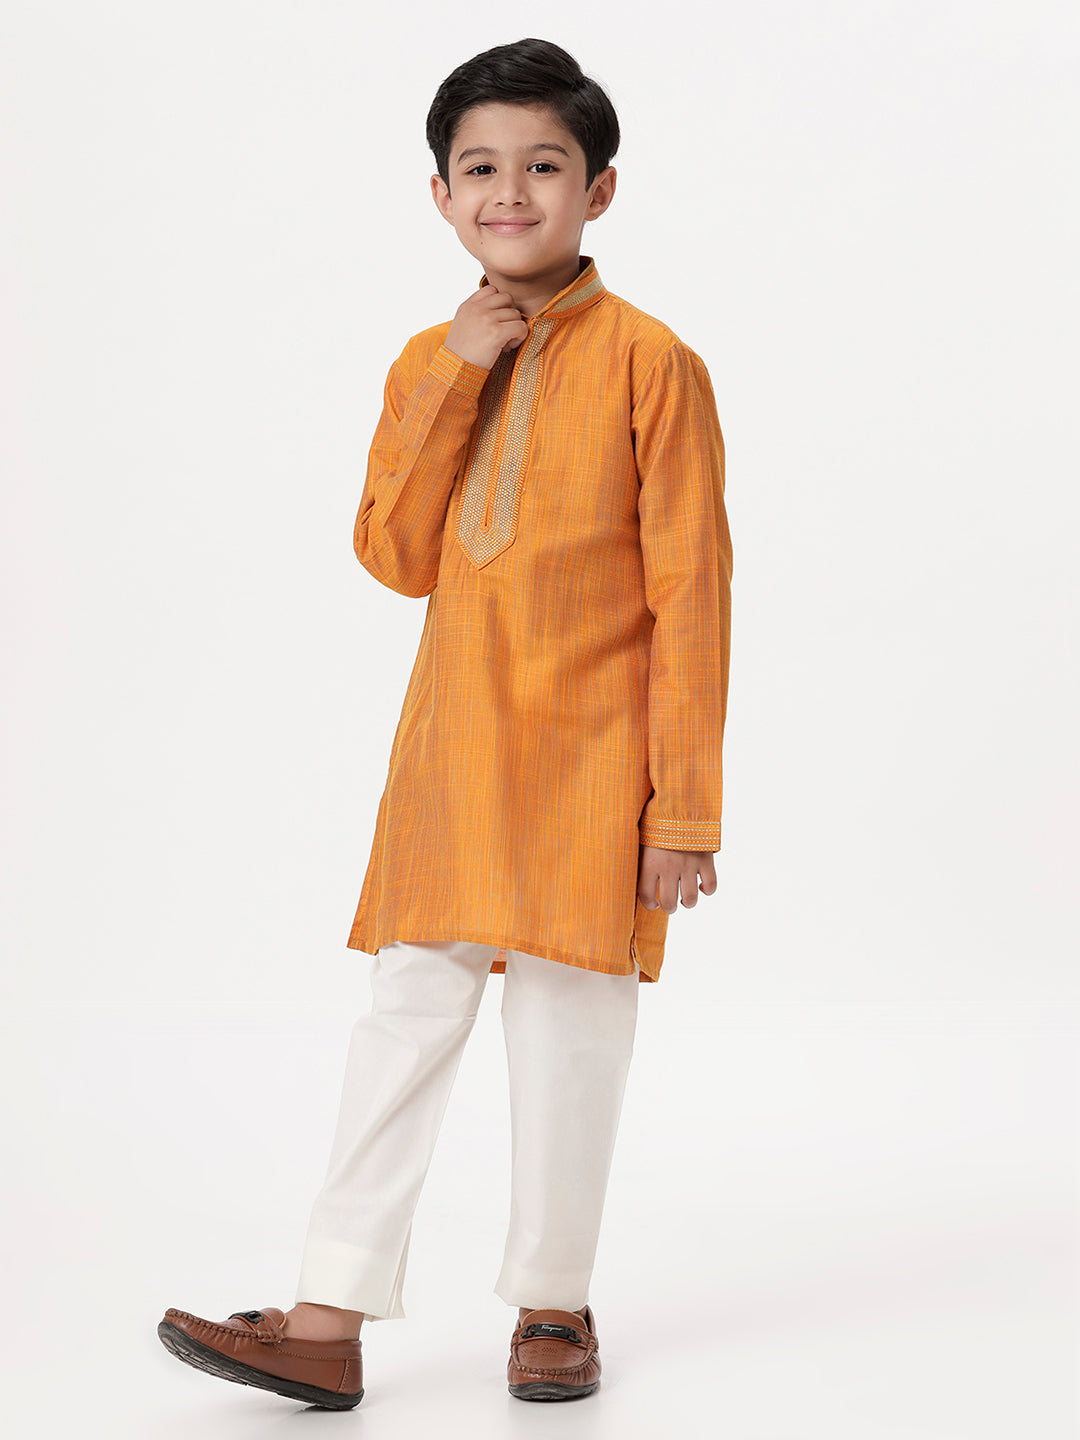 Boys Cotton Embellished Neckline Full Sleeves Orange Kurta with Pyjama Pant Combo EMD3-Side view